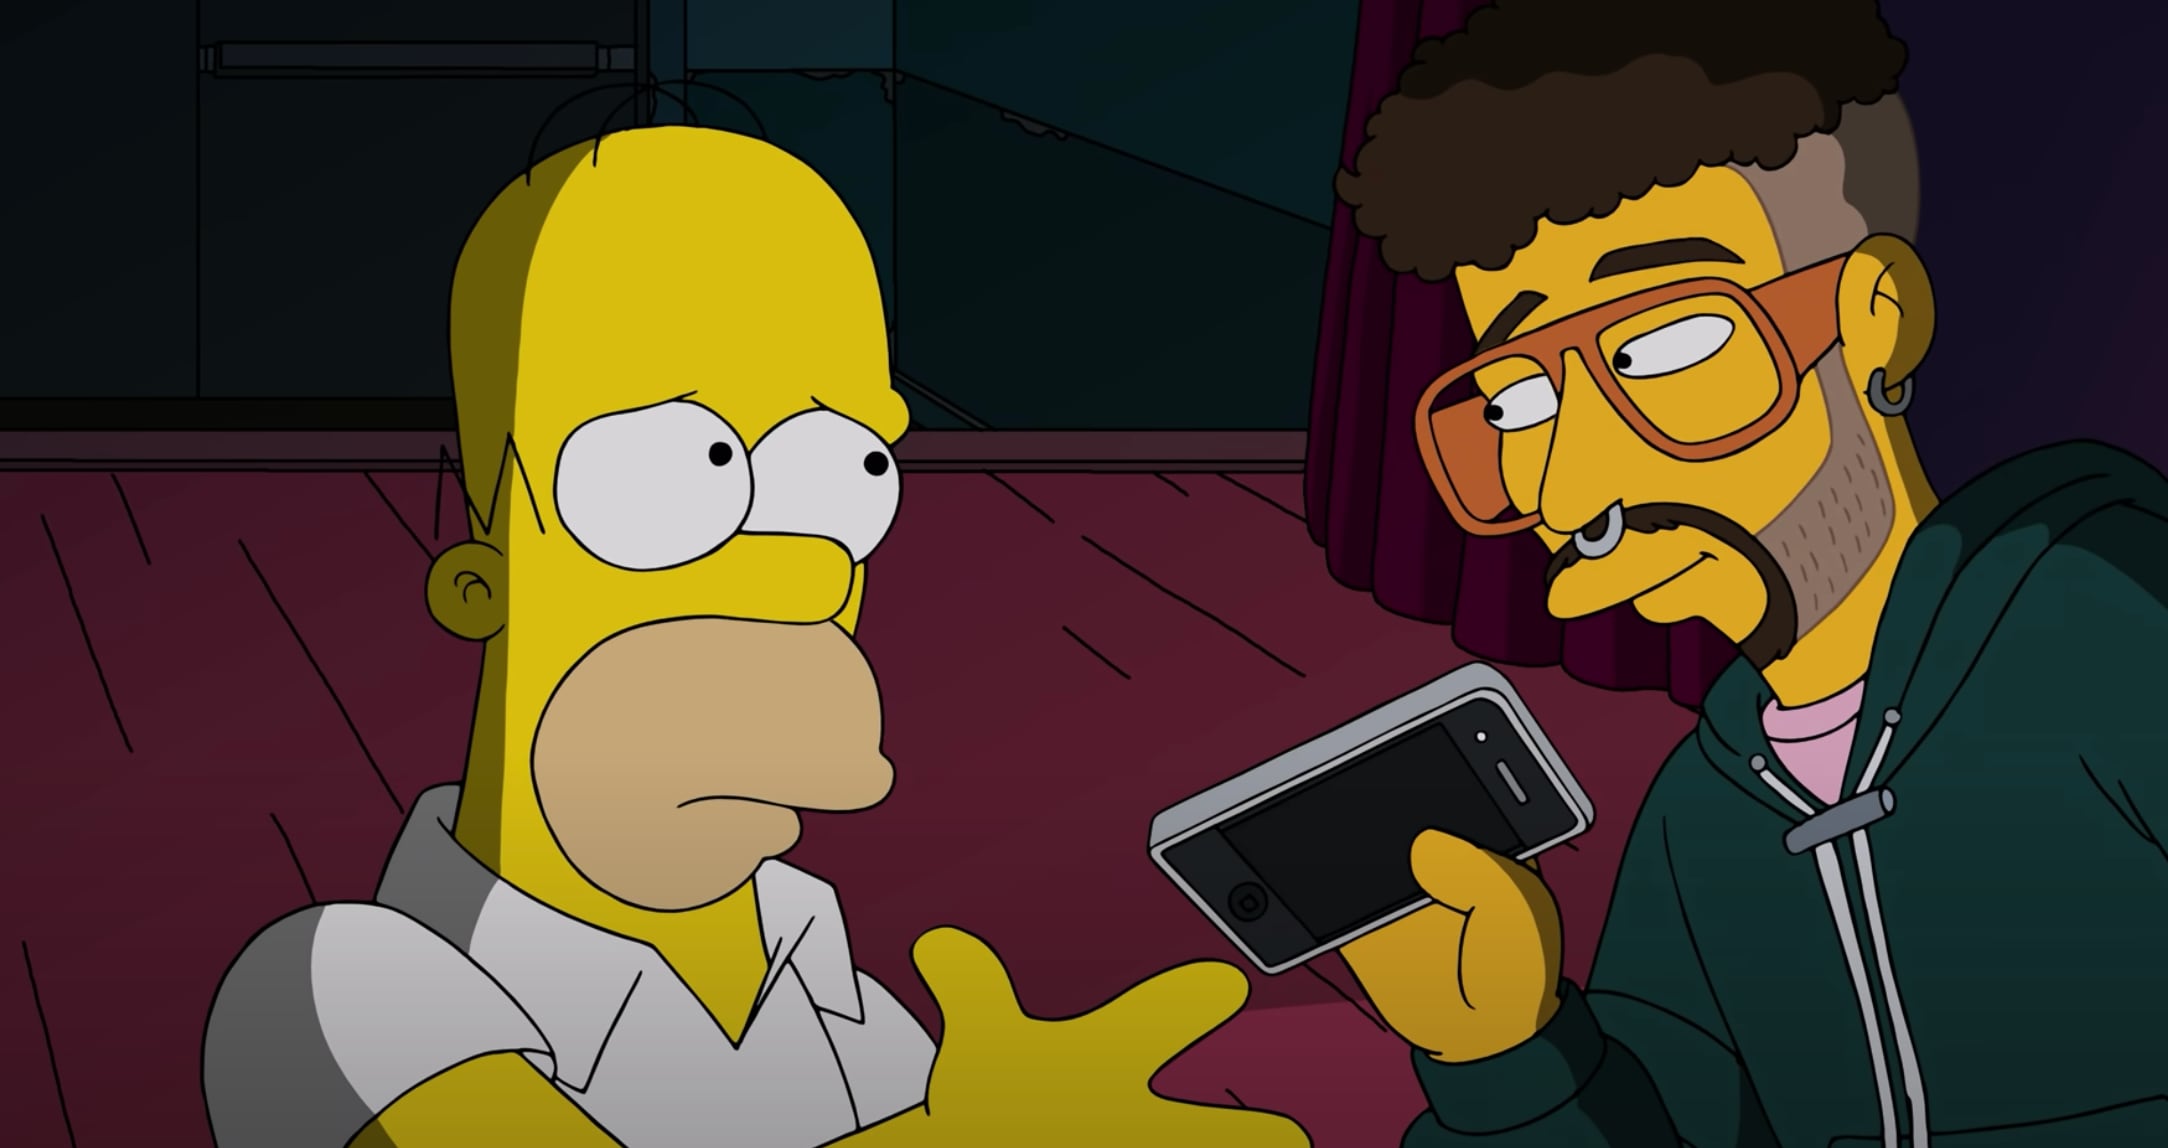 Una de las últimas predicciones que hicieron 'Los Simpson' fue el famoso episodio cuando Bad Bunny destruyó un teléfono celular, lo que pasó en la vida real días después cuando el artista lanzó al agua el aparato de una fan.